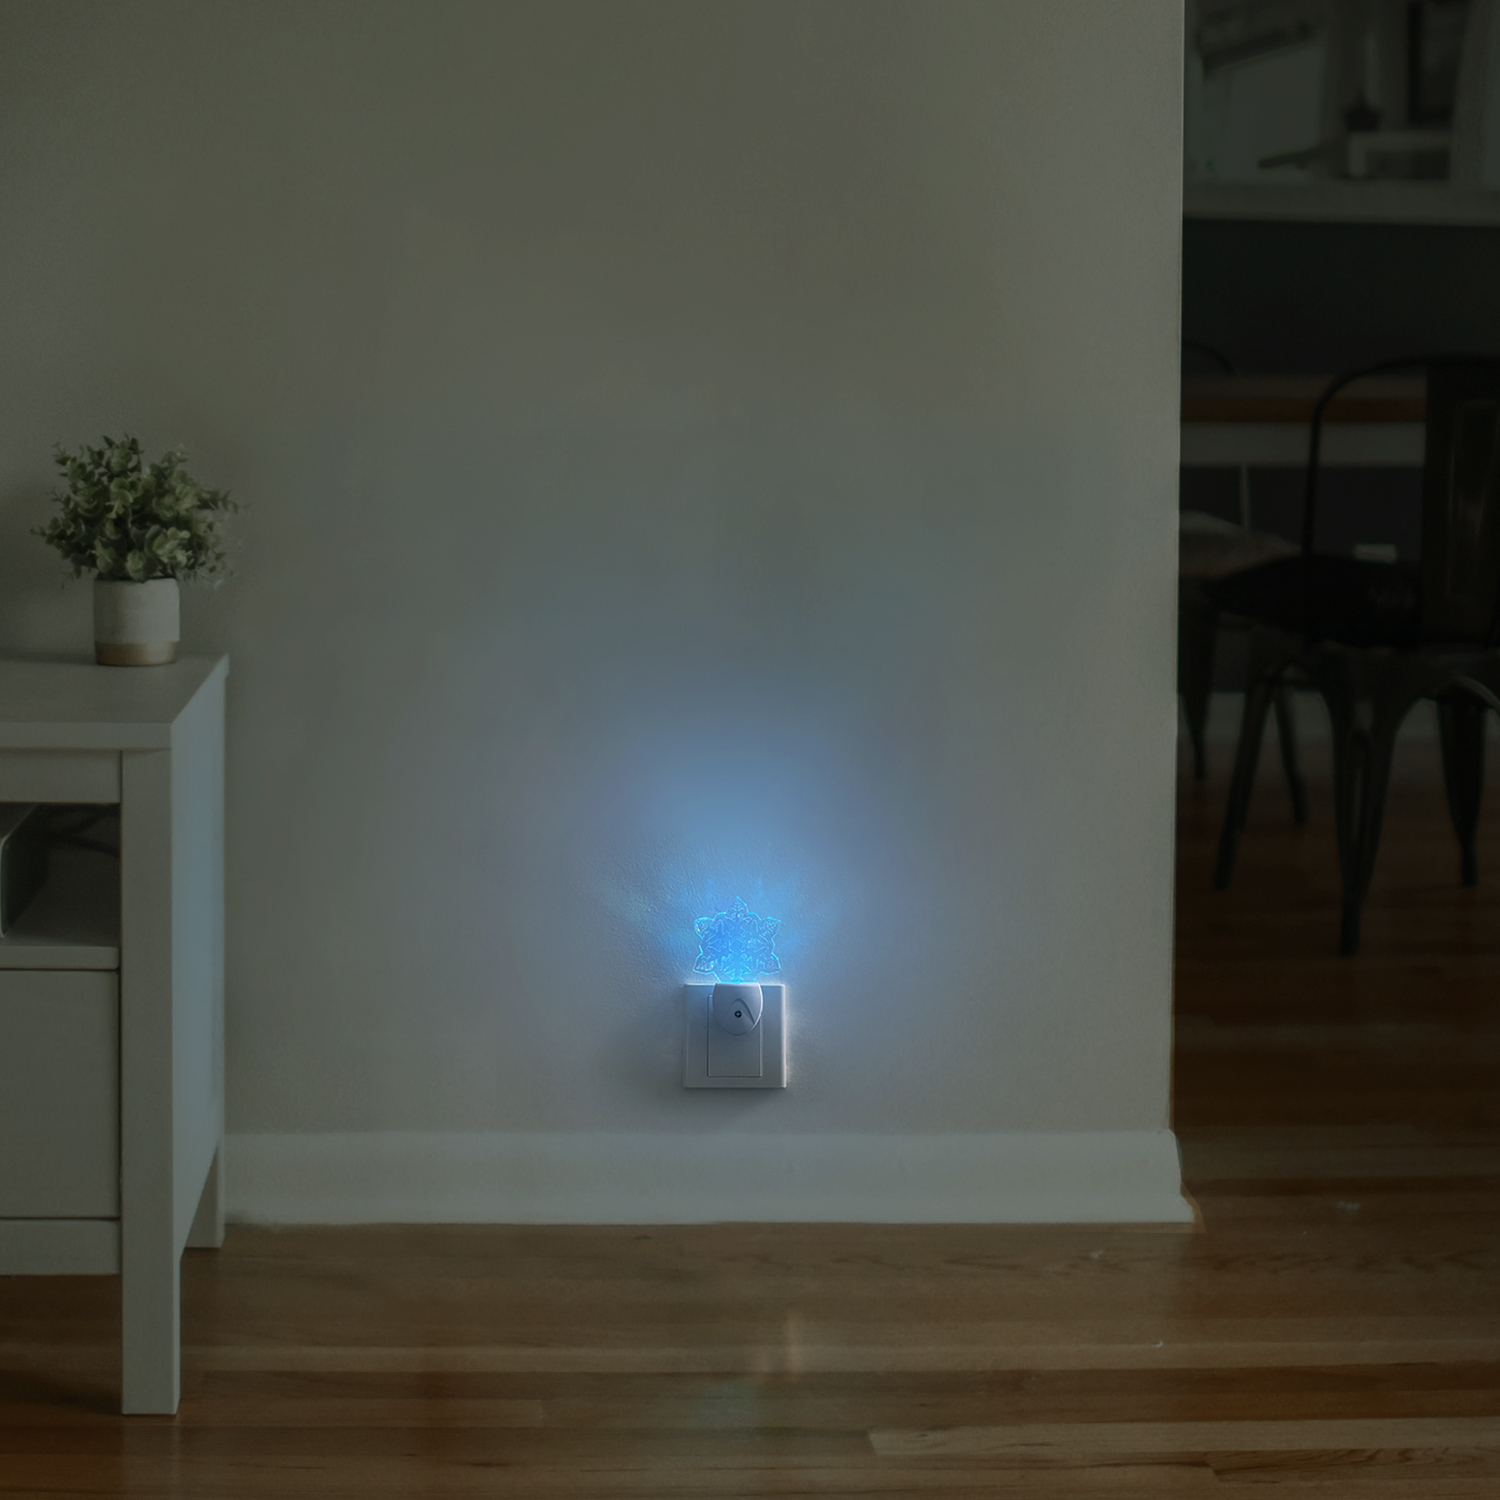 Aigostar Luz nocturna LED - 5 x Quitamiedos infantile, Sensor de oscuridad, Multicolor, 0.5 W, RGB 7 colores, enchufable, perfecto para pasillos o habitaciones infantiles. Forma de copo de nieve.